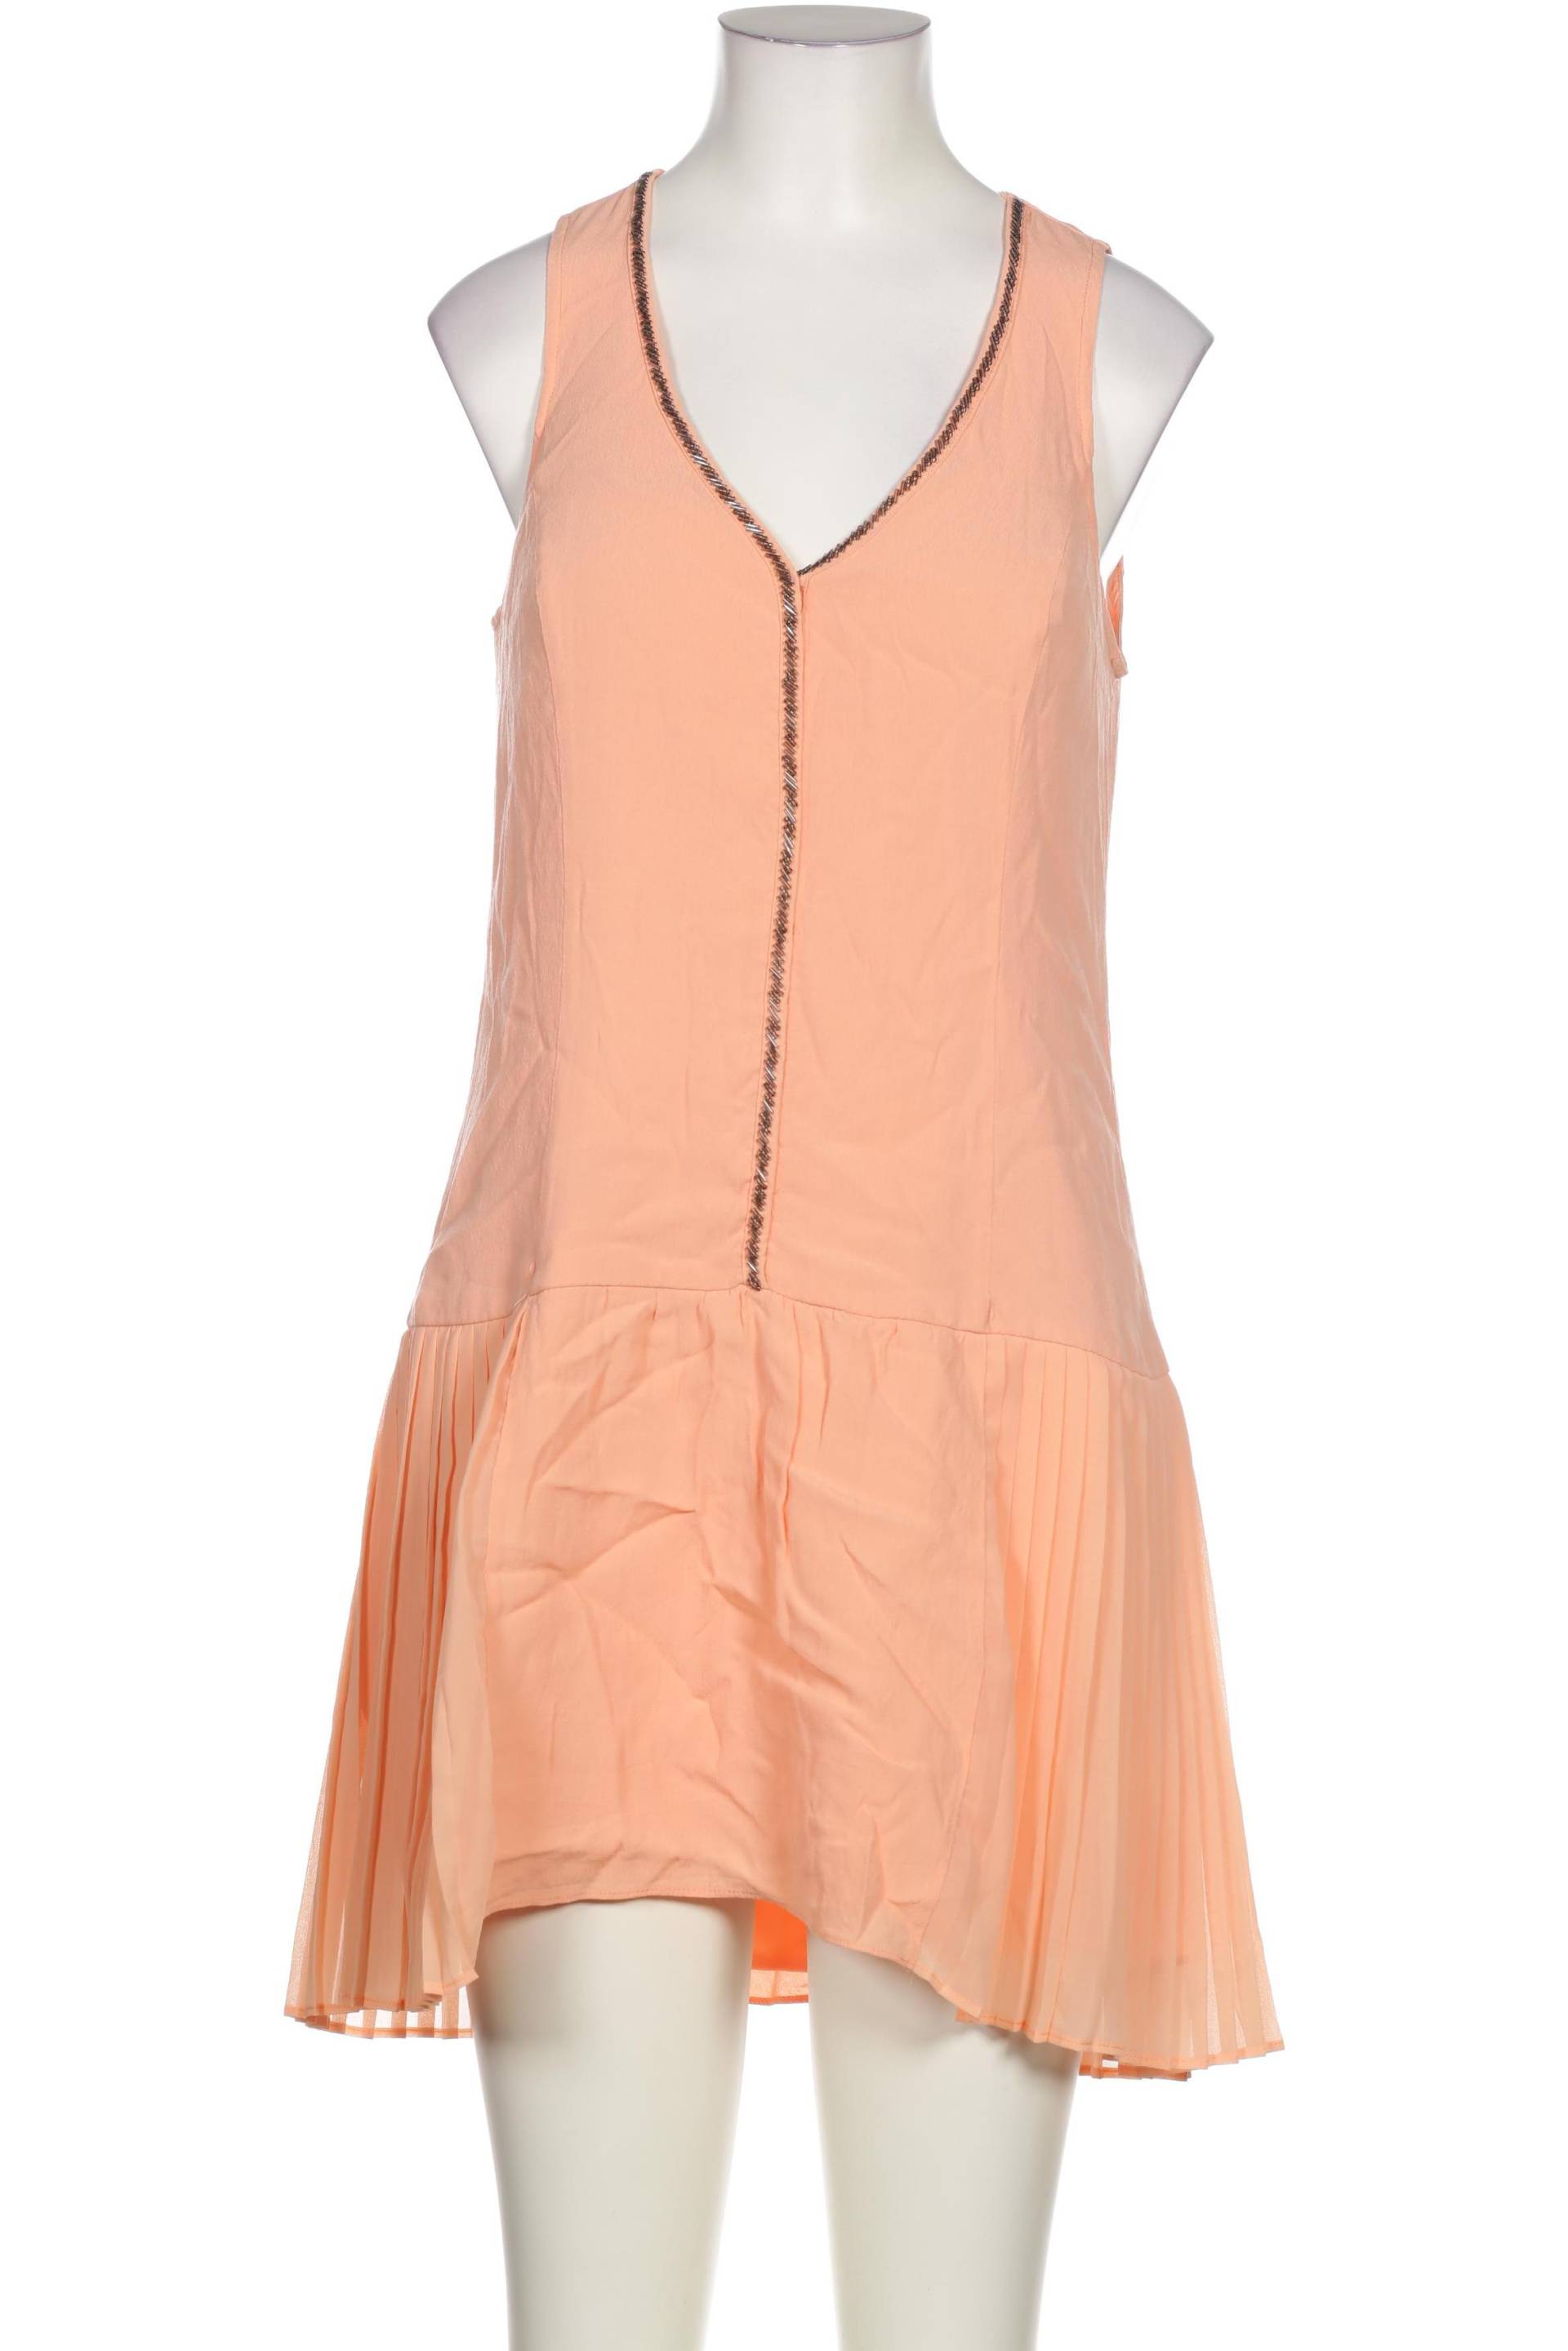 Promod Damen Kleid, orange, Gr. 34 von Promod